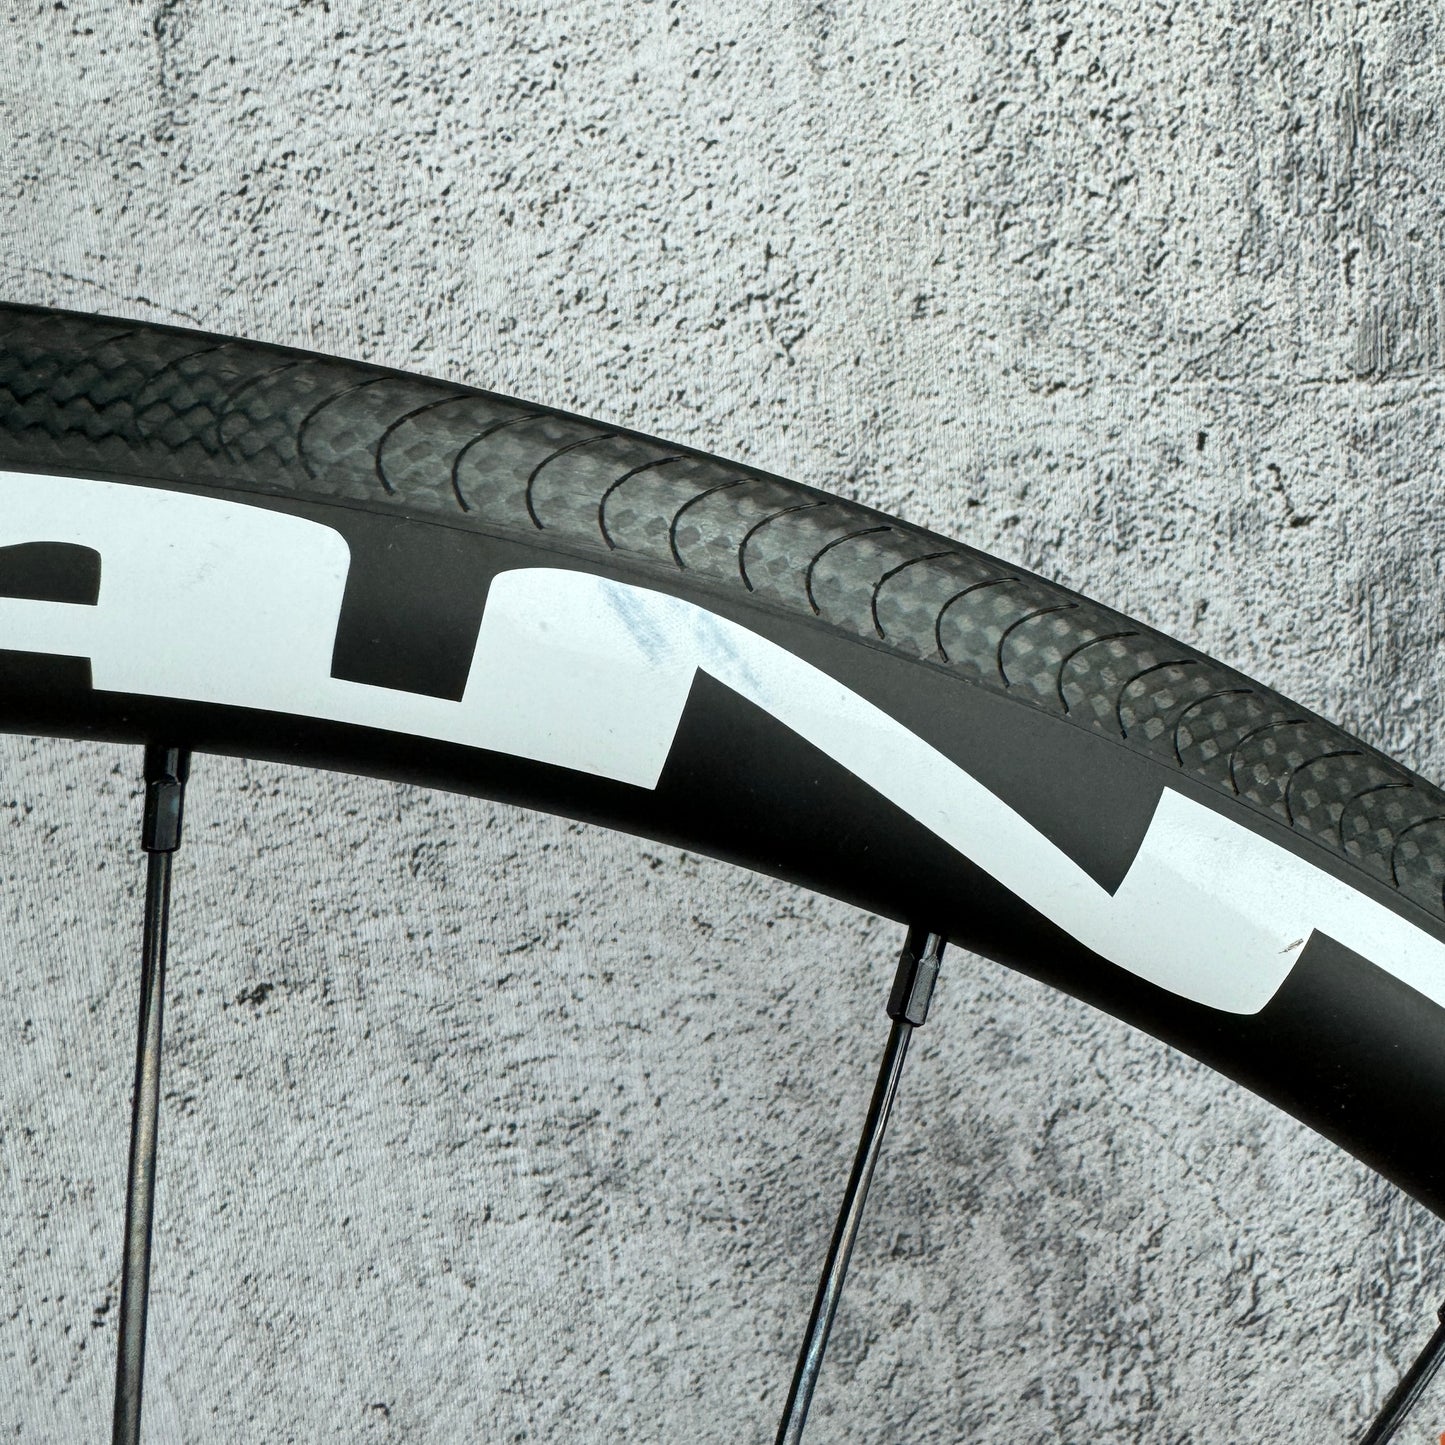 Roue Alian Pro+ 35mm Carbon Tubeless Rim Brake Road Bike Wheelset 700c 1420g